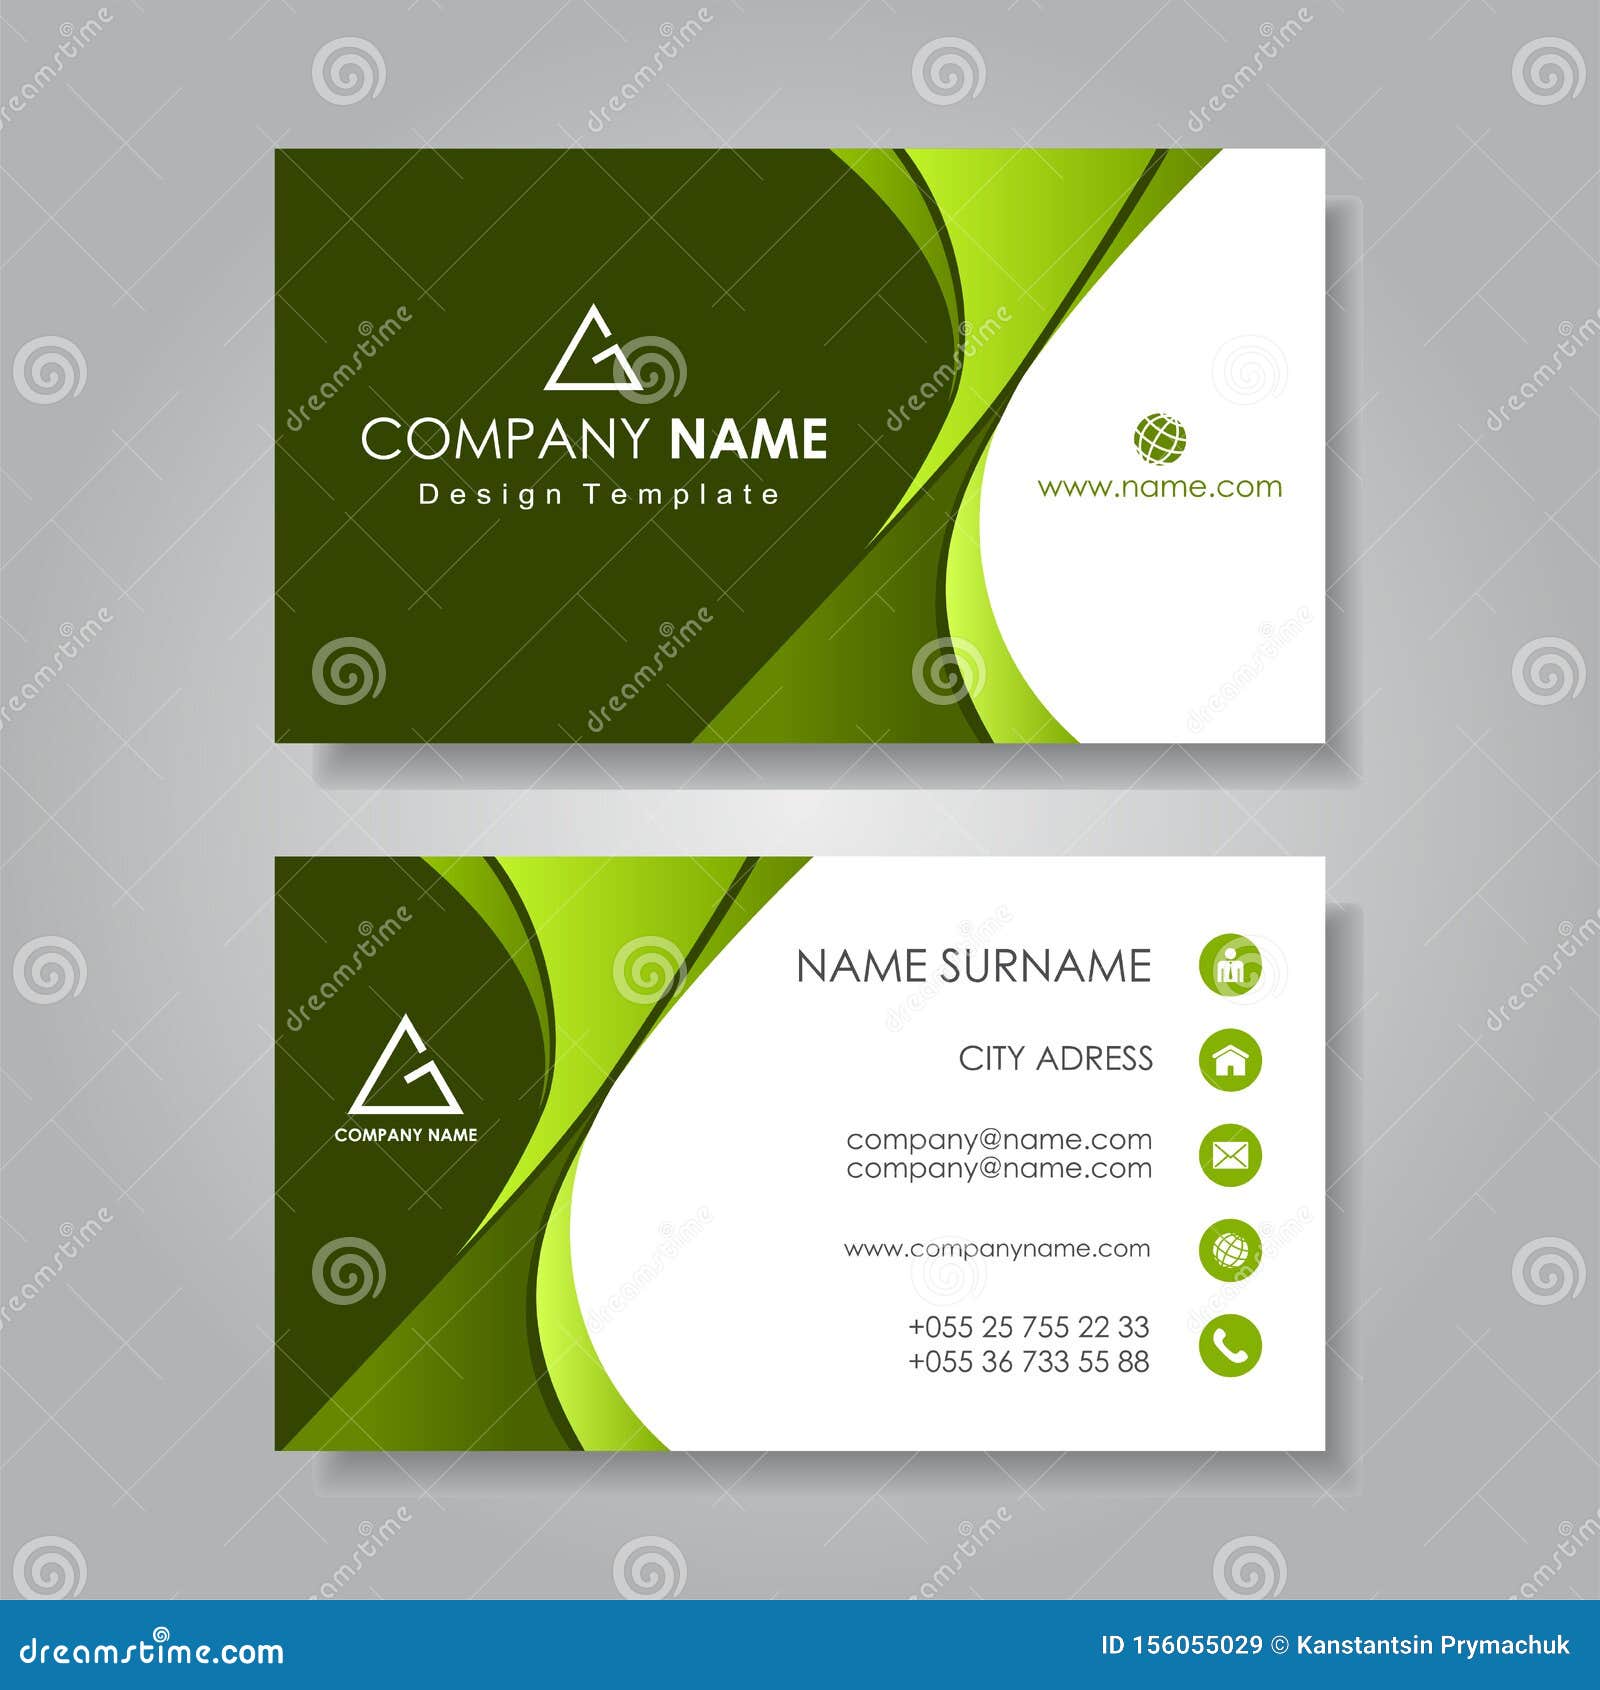 Modern Business Card Template Flat Design. Vector Illustration In Modern Business Card Design Templates